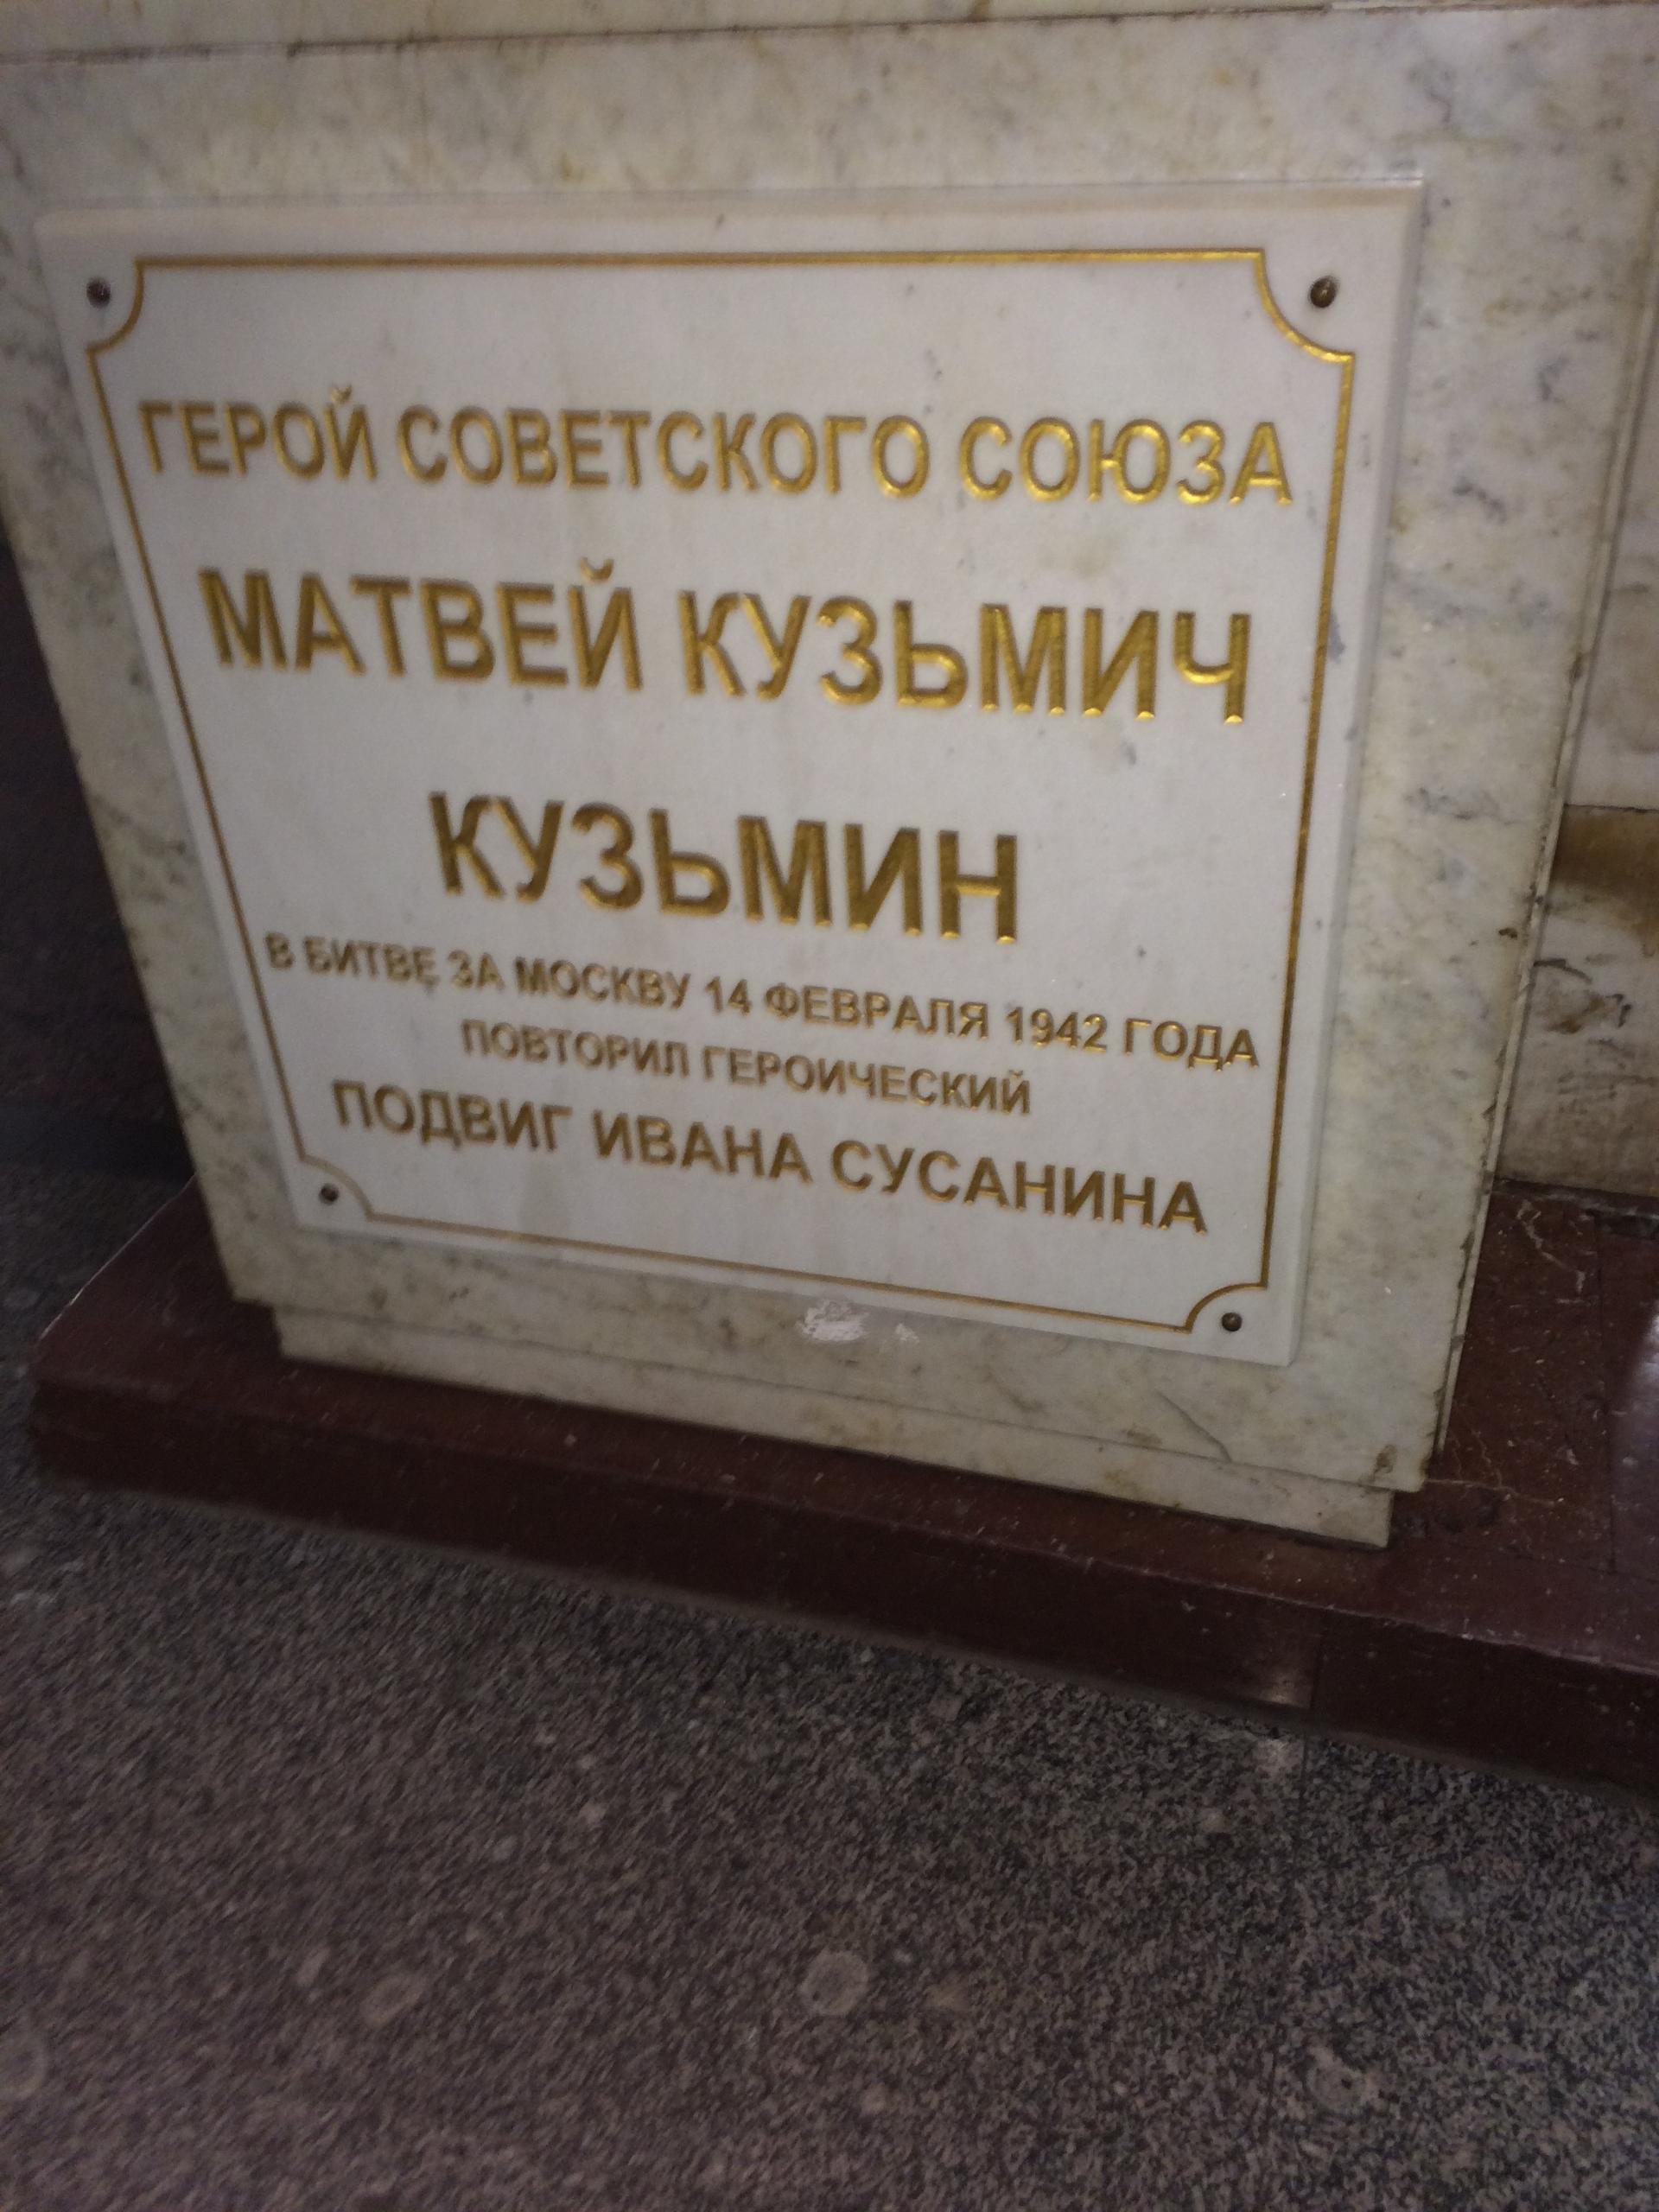 Памятник Кузьмину Матвею Кузьмичу